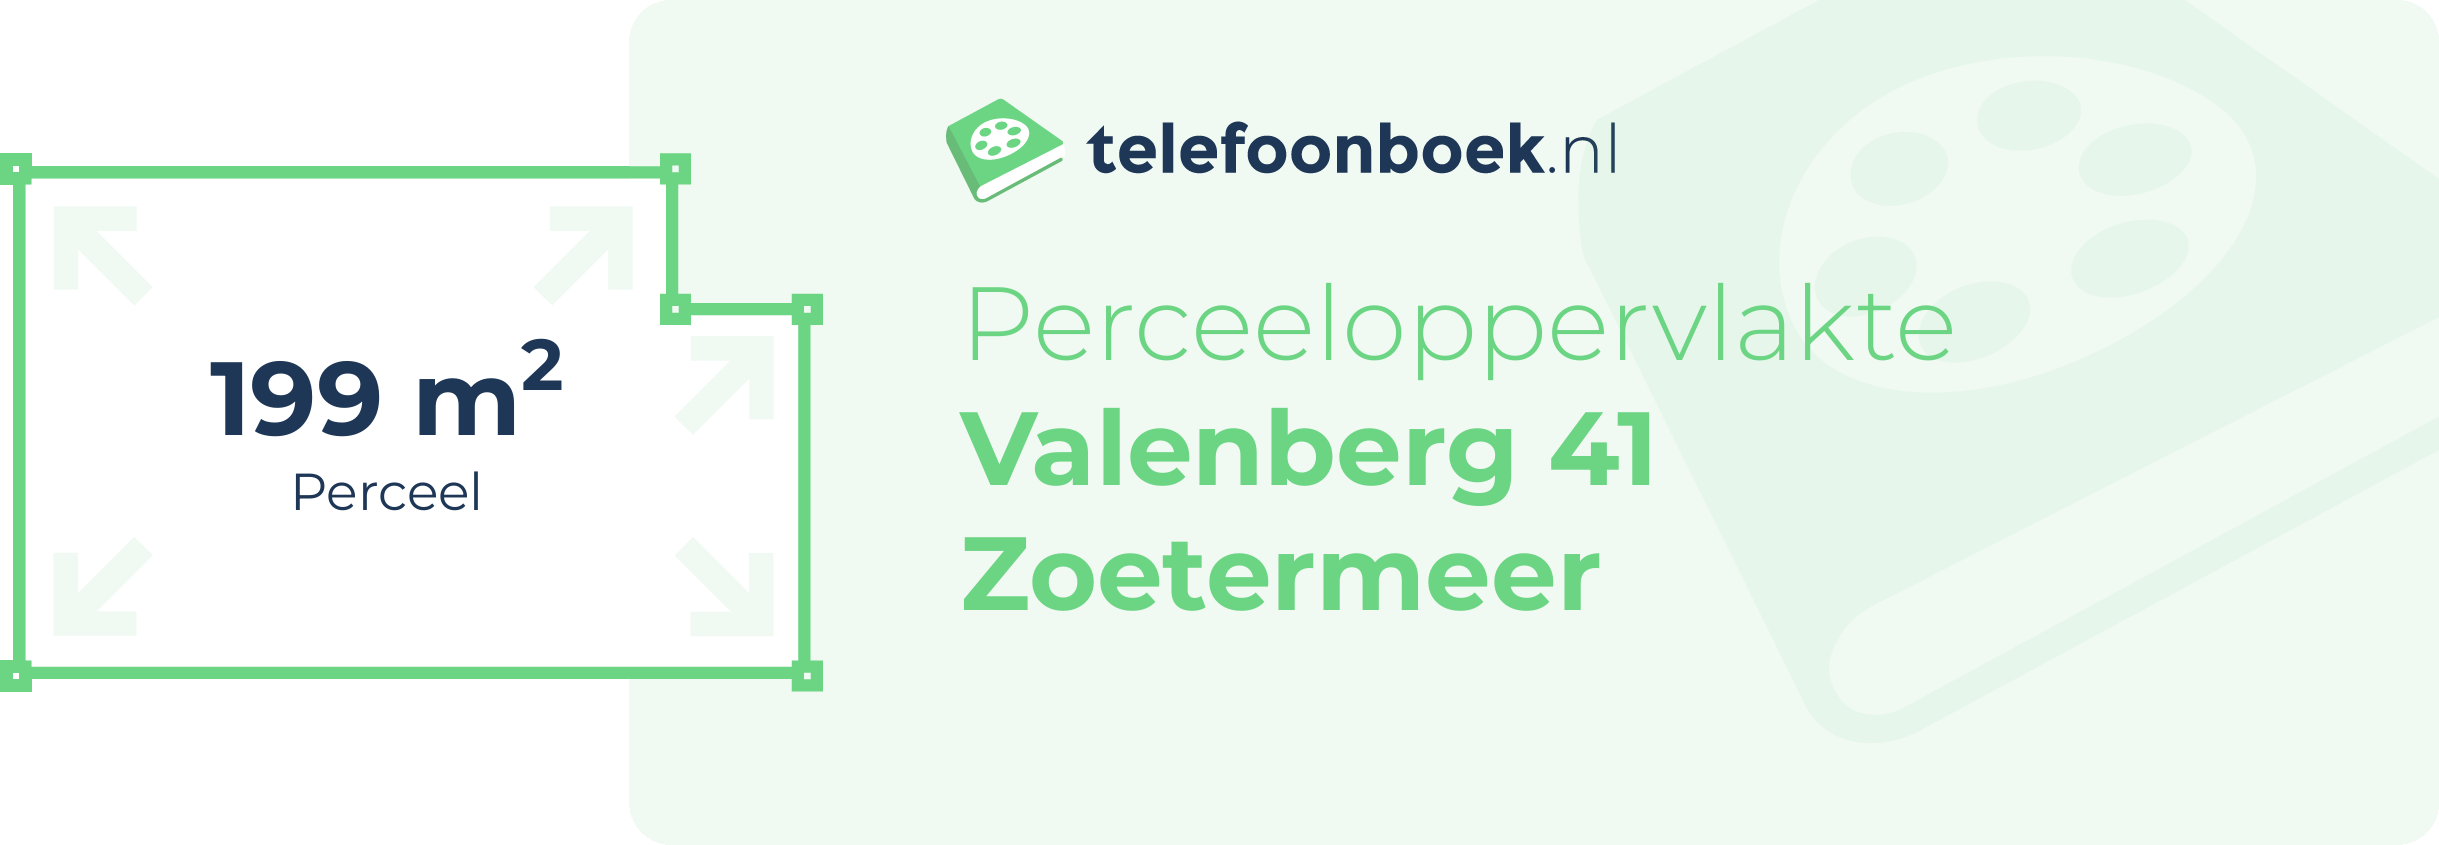 Perceeloppervlakte Valenberg 41 Zoetermeer